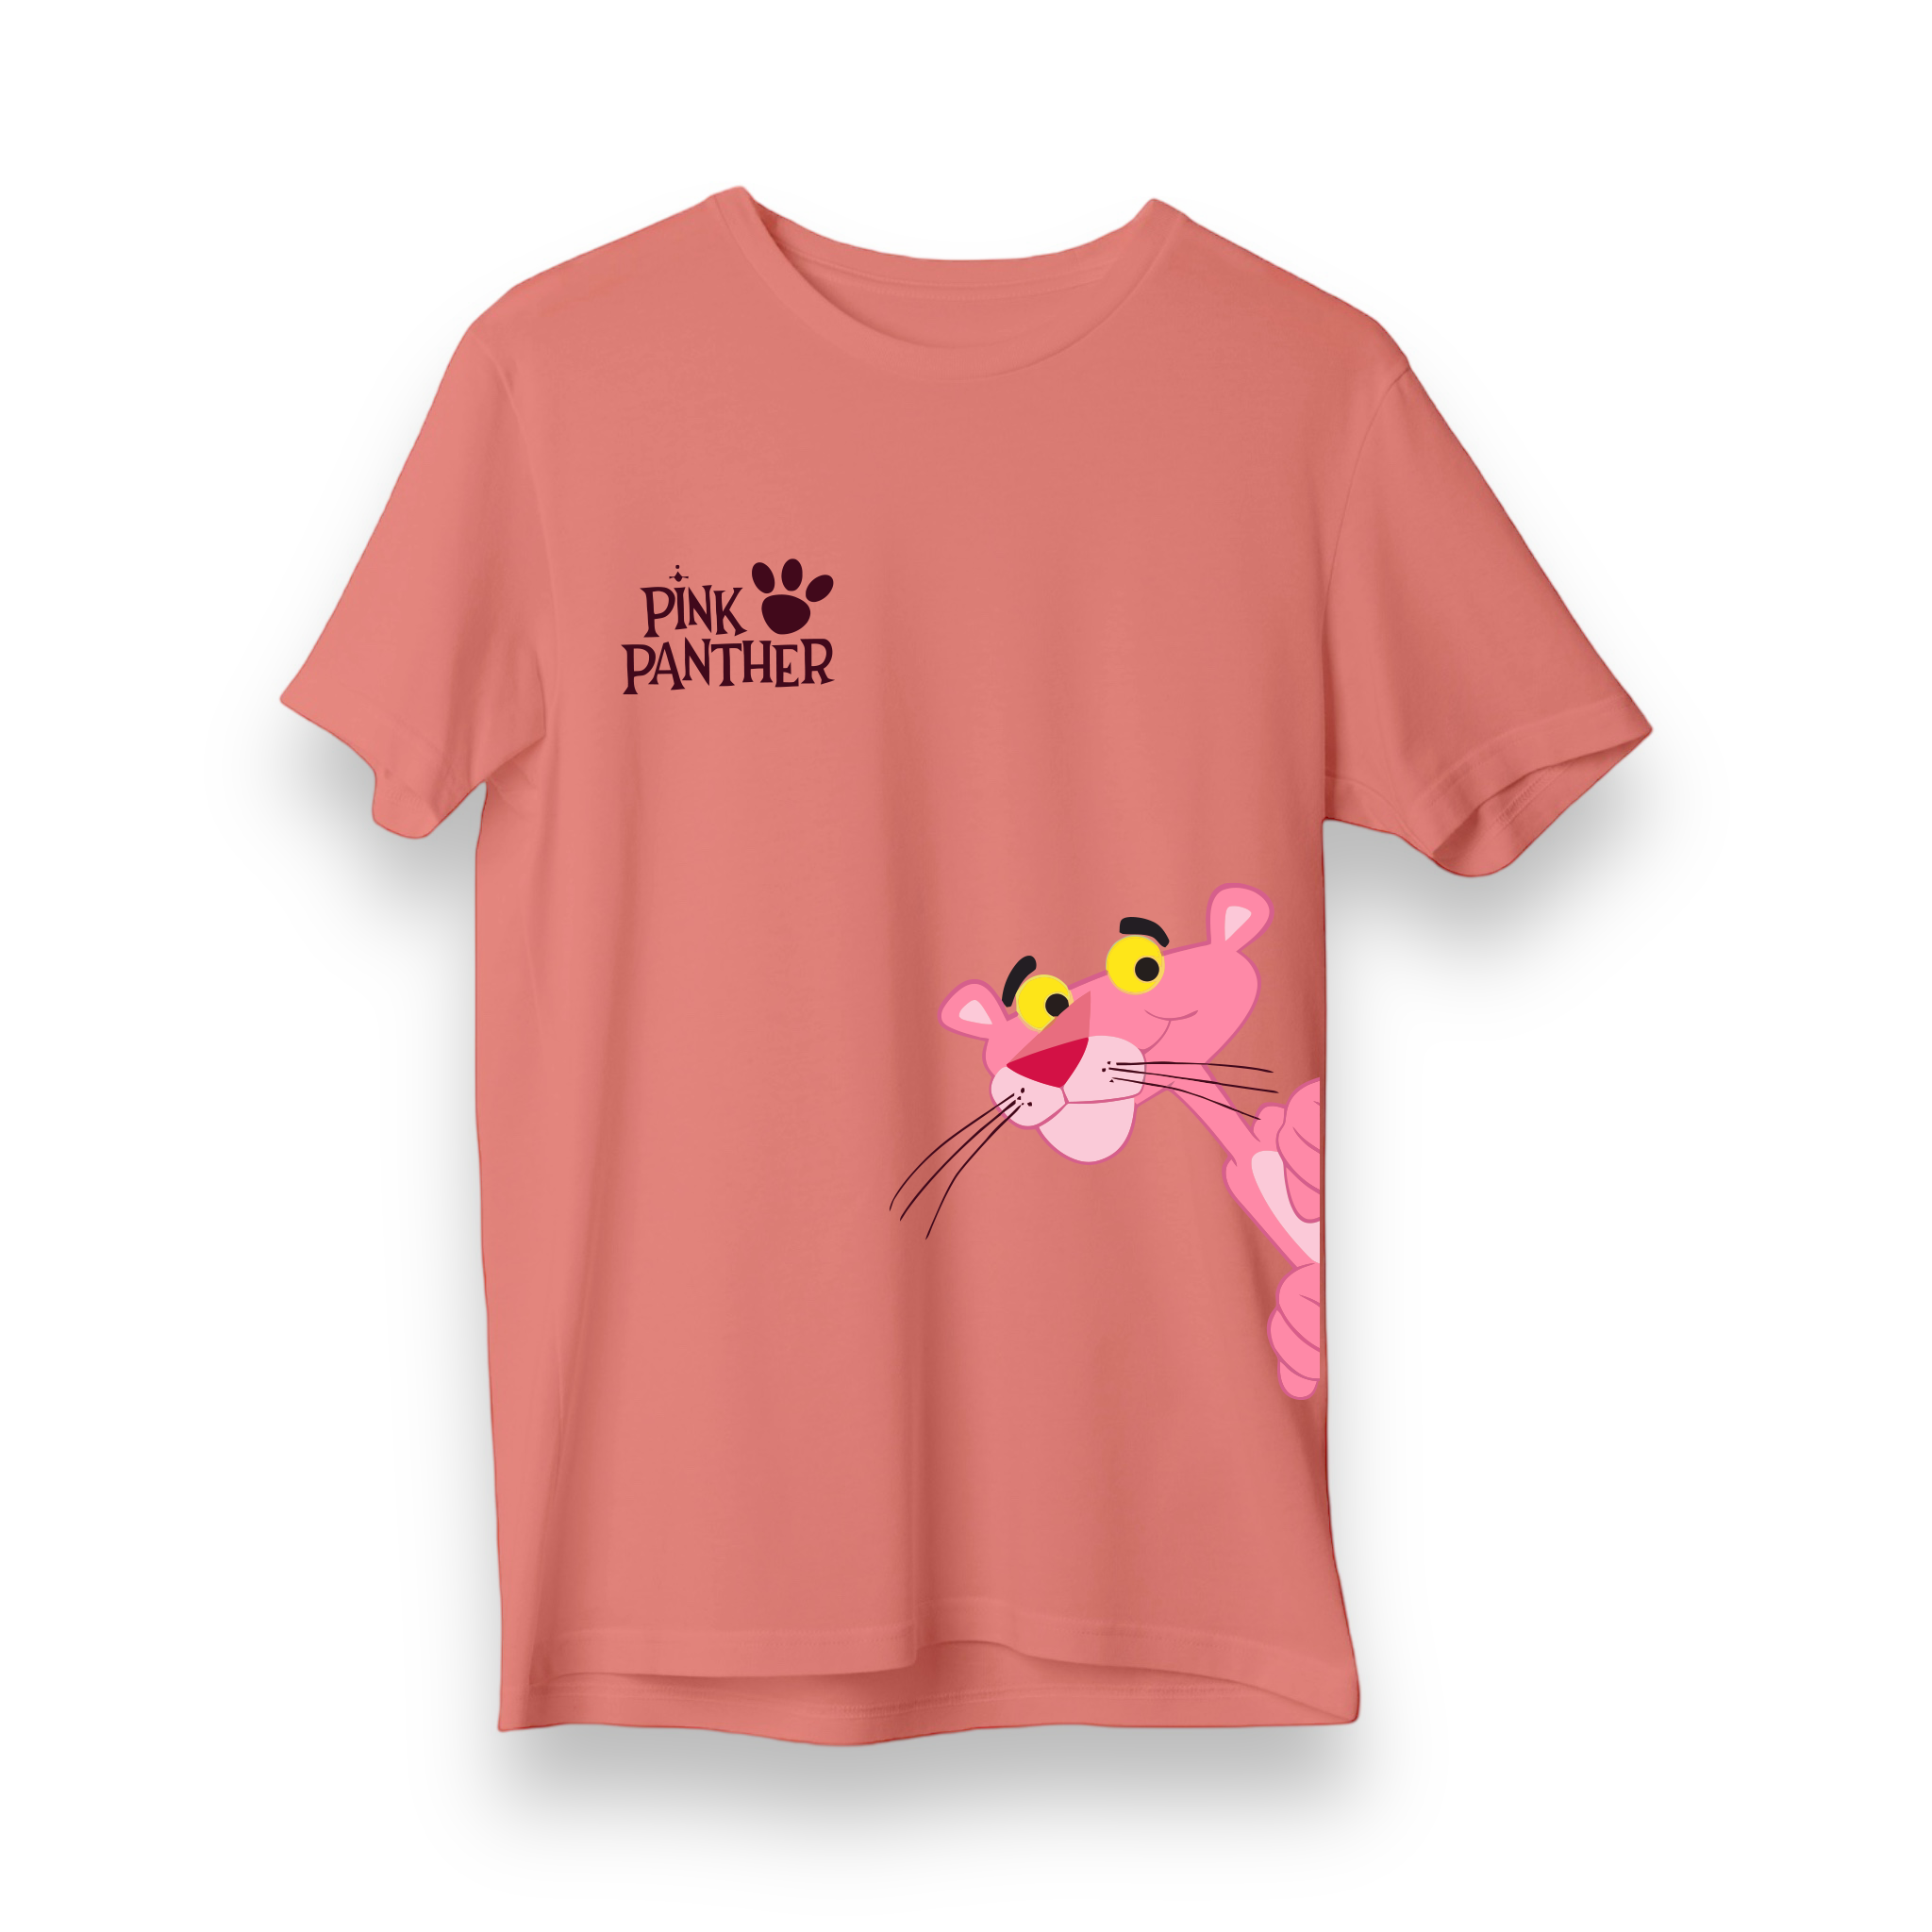 Pink Panther - Regular T-Shirt